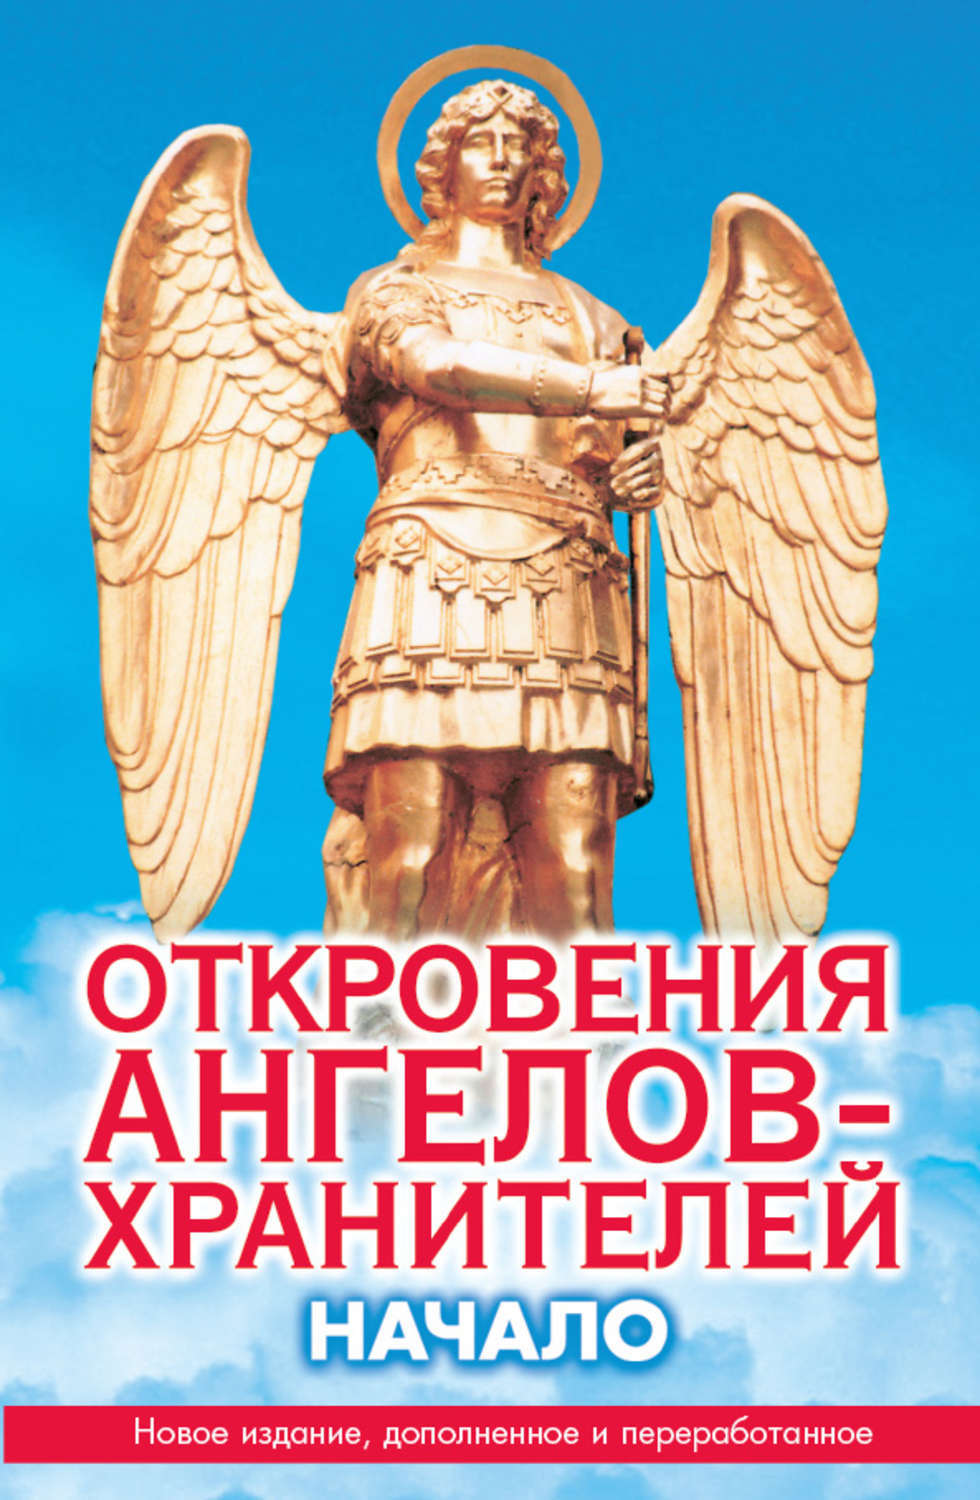 Книга "Откровение ангелов хранителей"